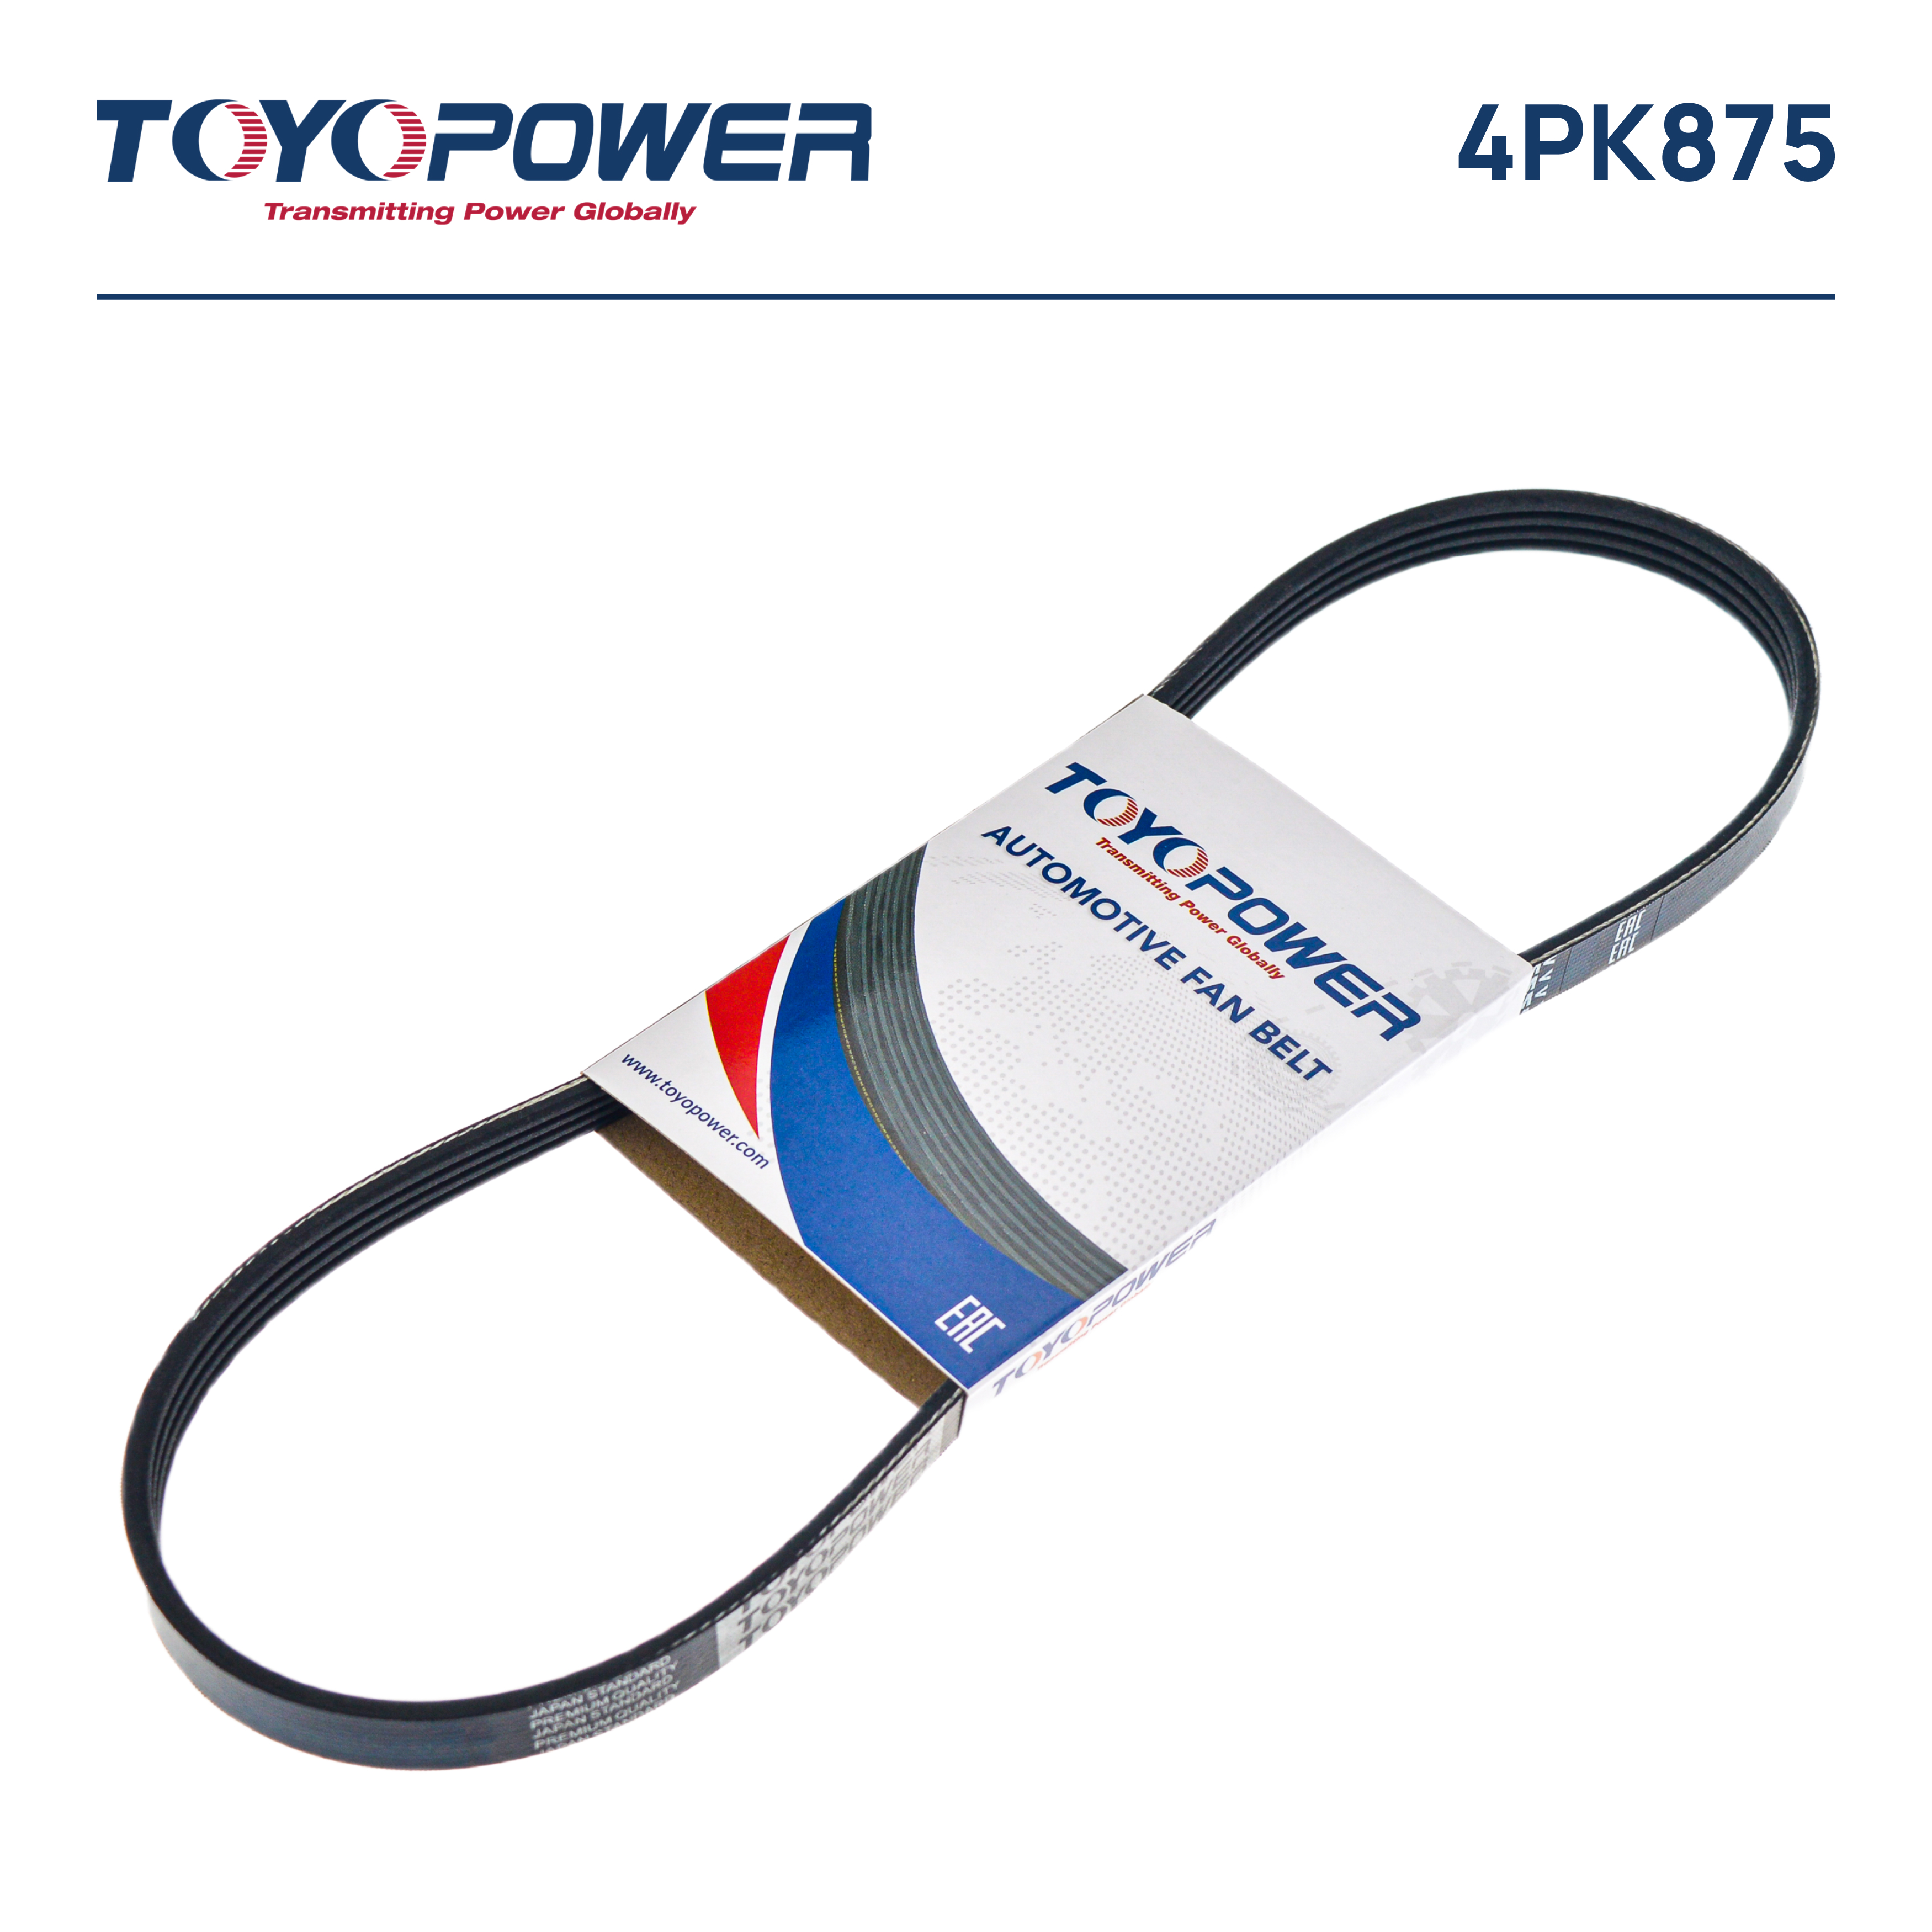 Ремень поликлиновый - Toyopower 4PK875